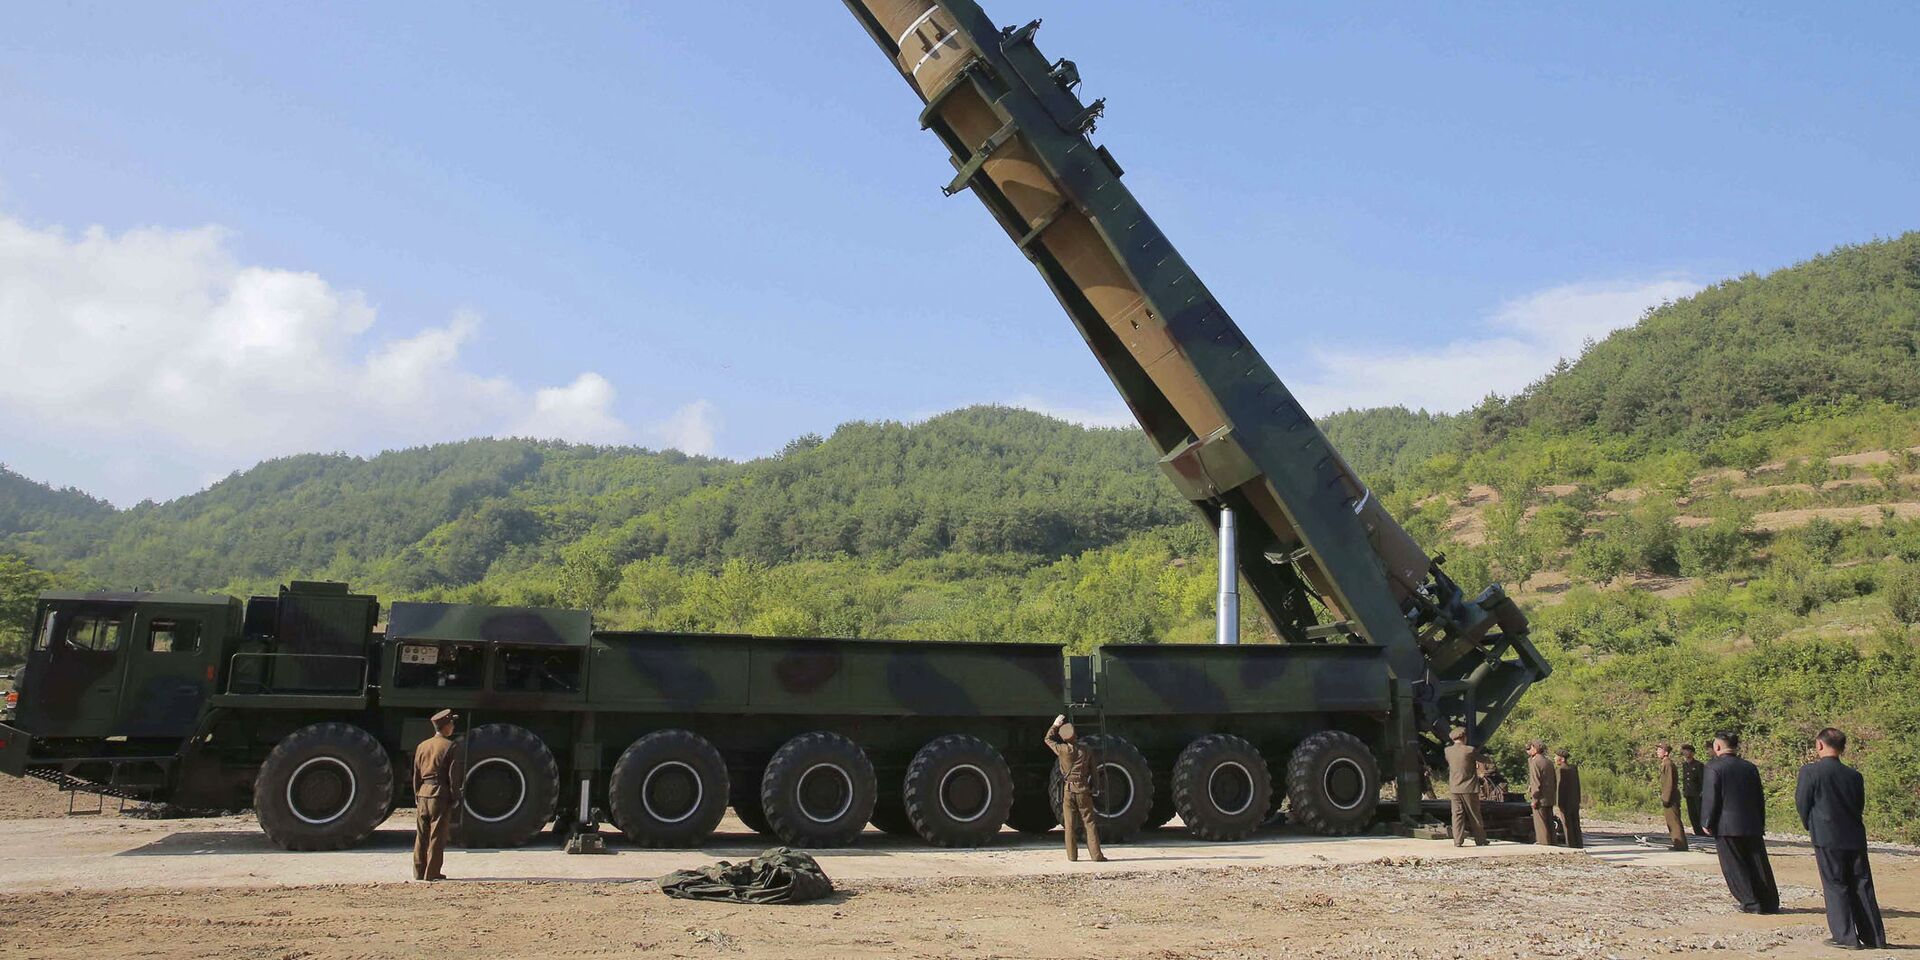 Лидер КНДР Ким Чен Ын осматривает ракету Хвасон-14 перед испытаниями. 4 июля 2017 - ИноСМИ, 1920, 09.03.2023